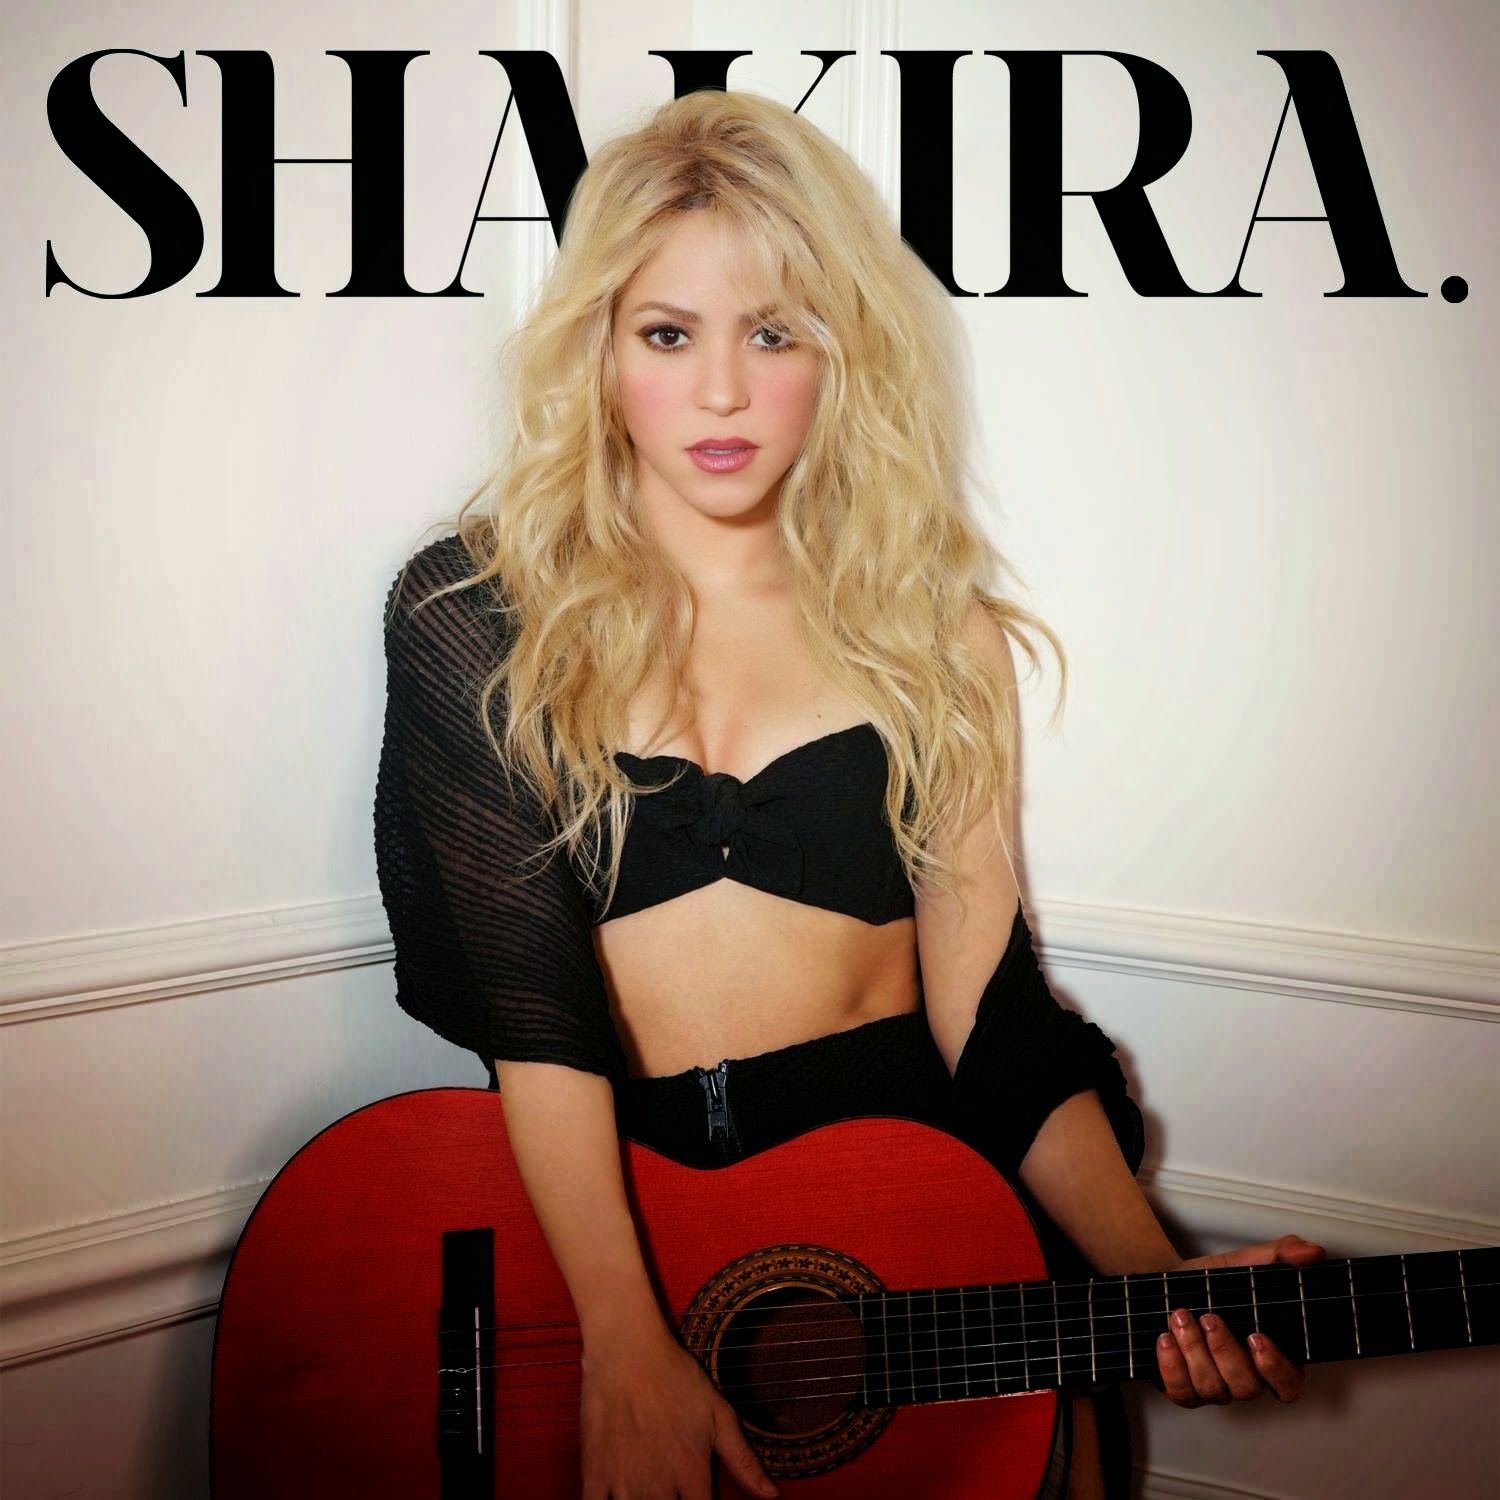 (팝송) Shakira - Empire (신남, 신비, 긴박, 격렬, 장엄, 즐거움, 흥겨움, 비장, 흥함, 활기, 몽환, 당당, 경쾌)